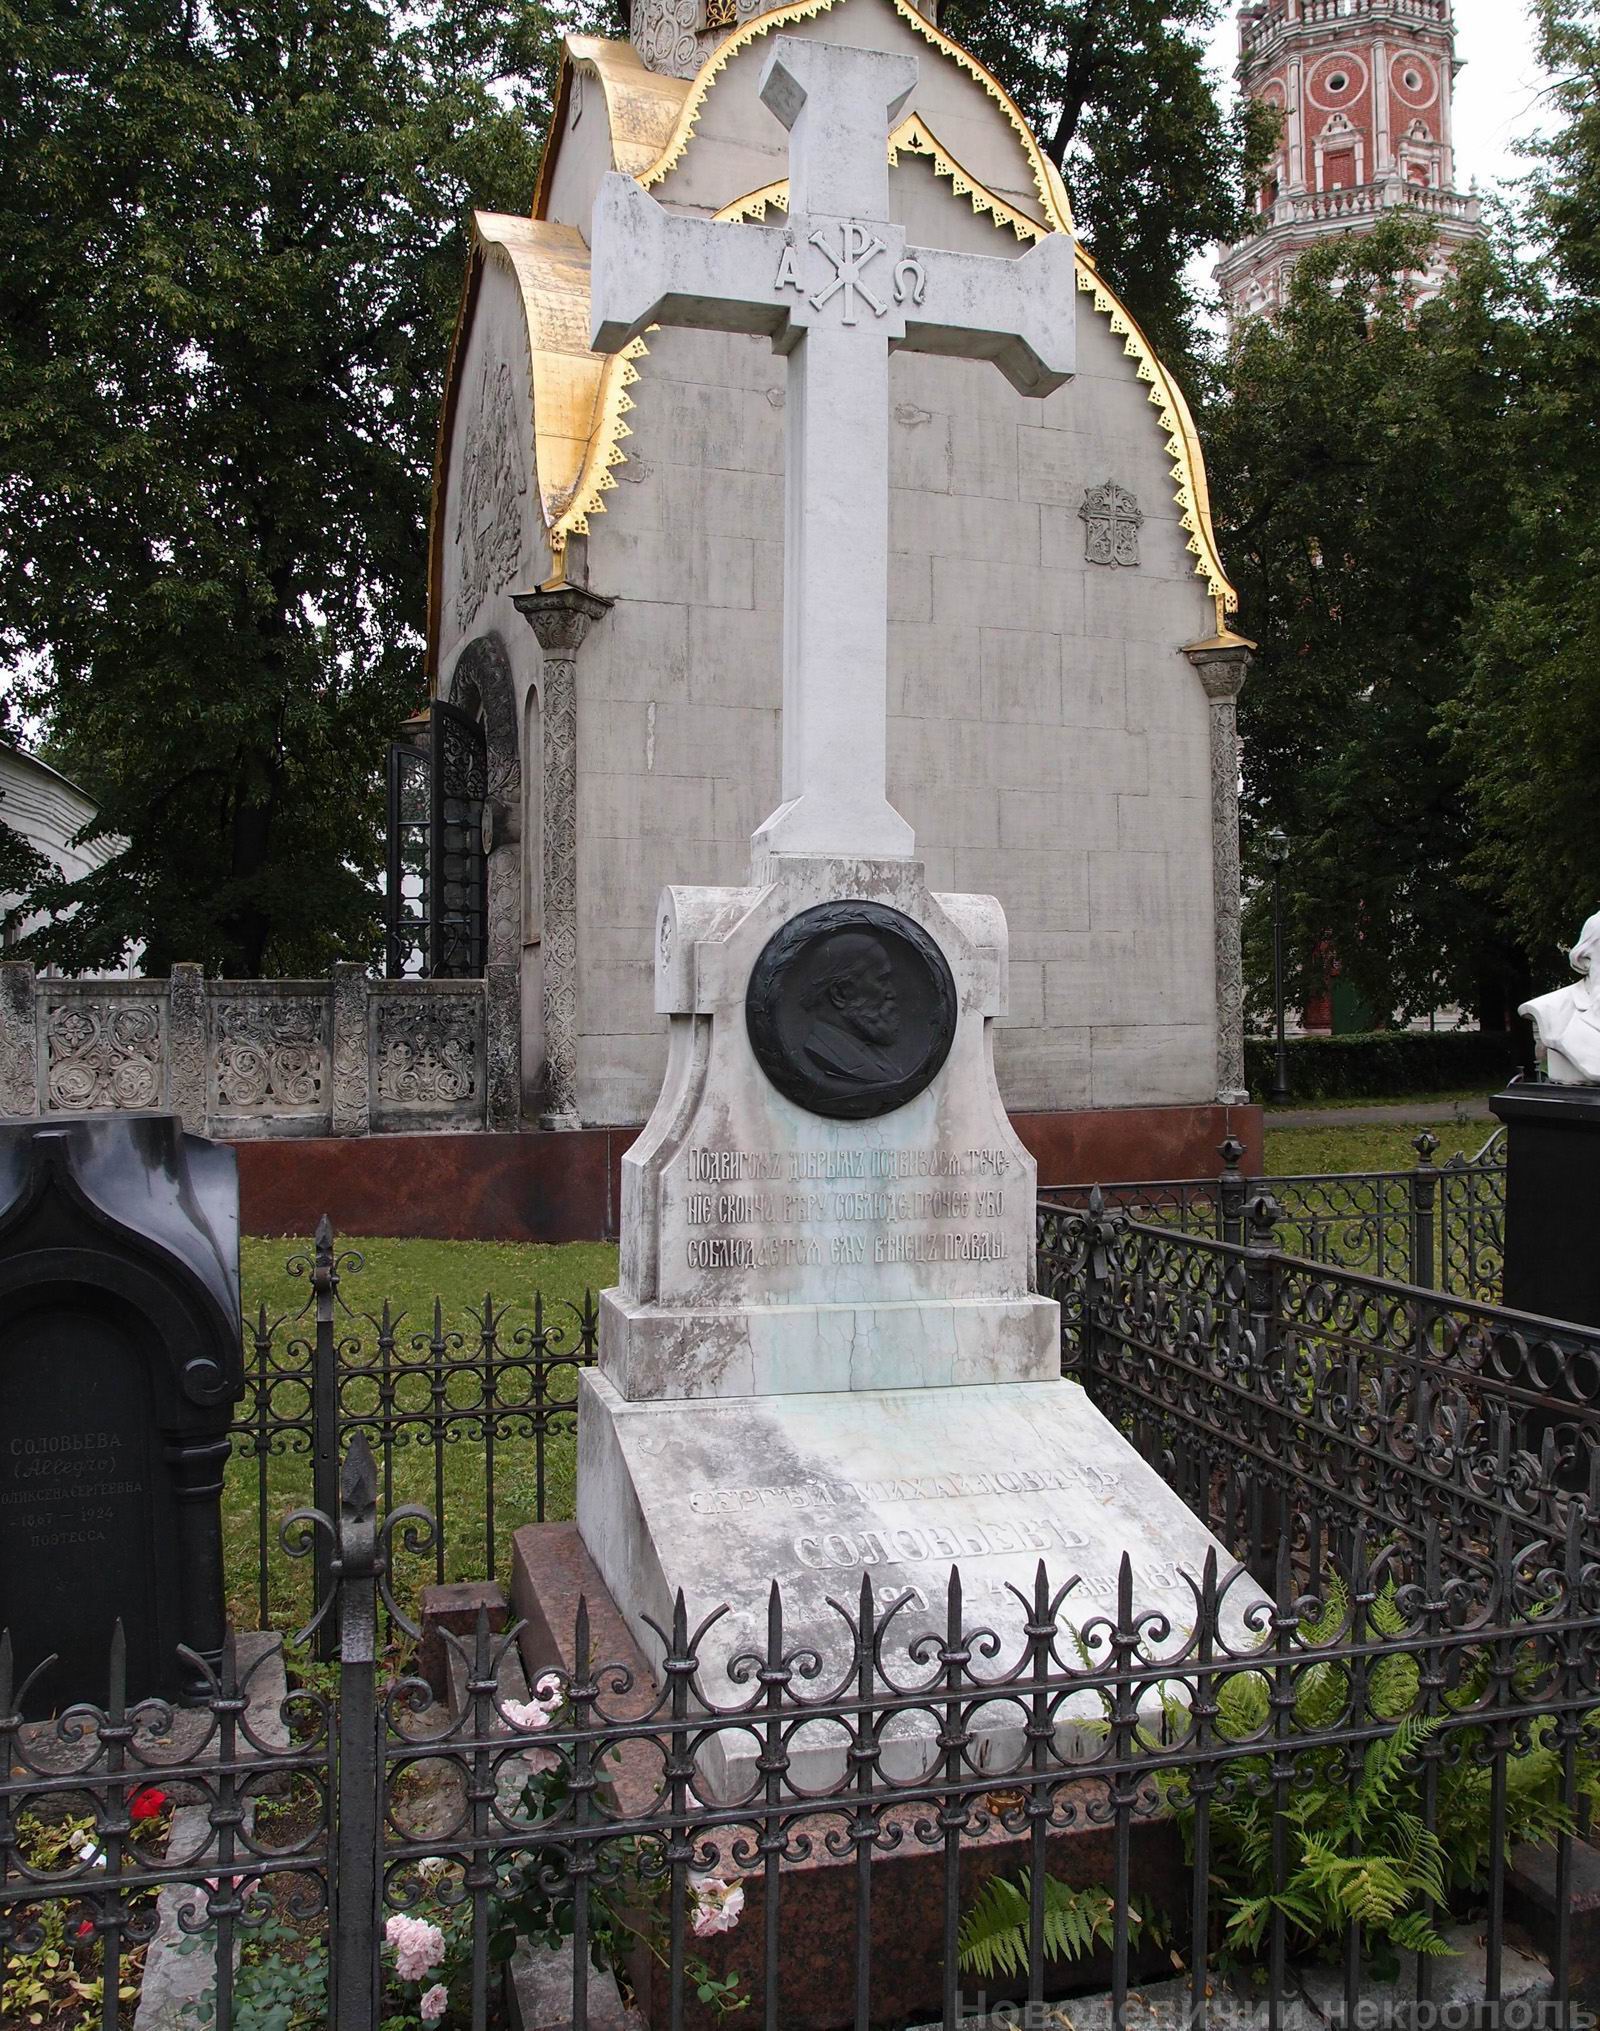 Памятник на могиле Соловьёва С.М. (1820-1879), ск. В.Кафка, В.Хомутов (реставрация креста), в Новодевичьем монастыре. Нажмите левую кнопку мыши, чтобы увидеть общий вид и фрагменты памятника.